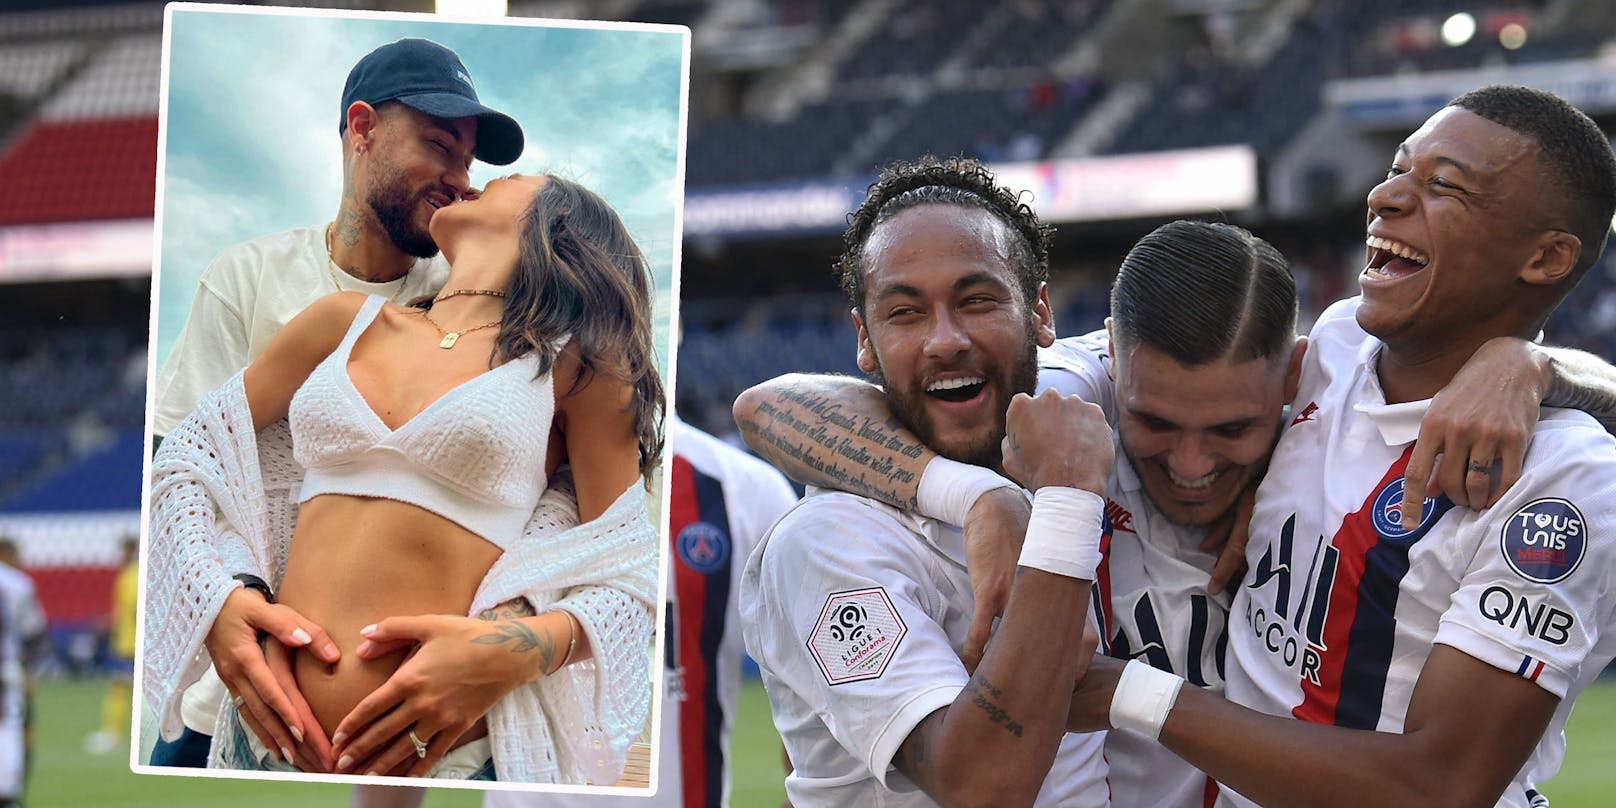 Neymar Jr. und seine Freundin haben einen speziellen Deal.